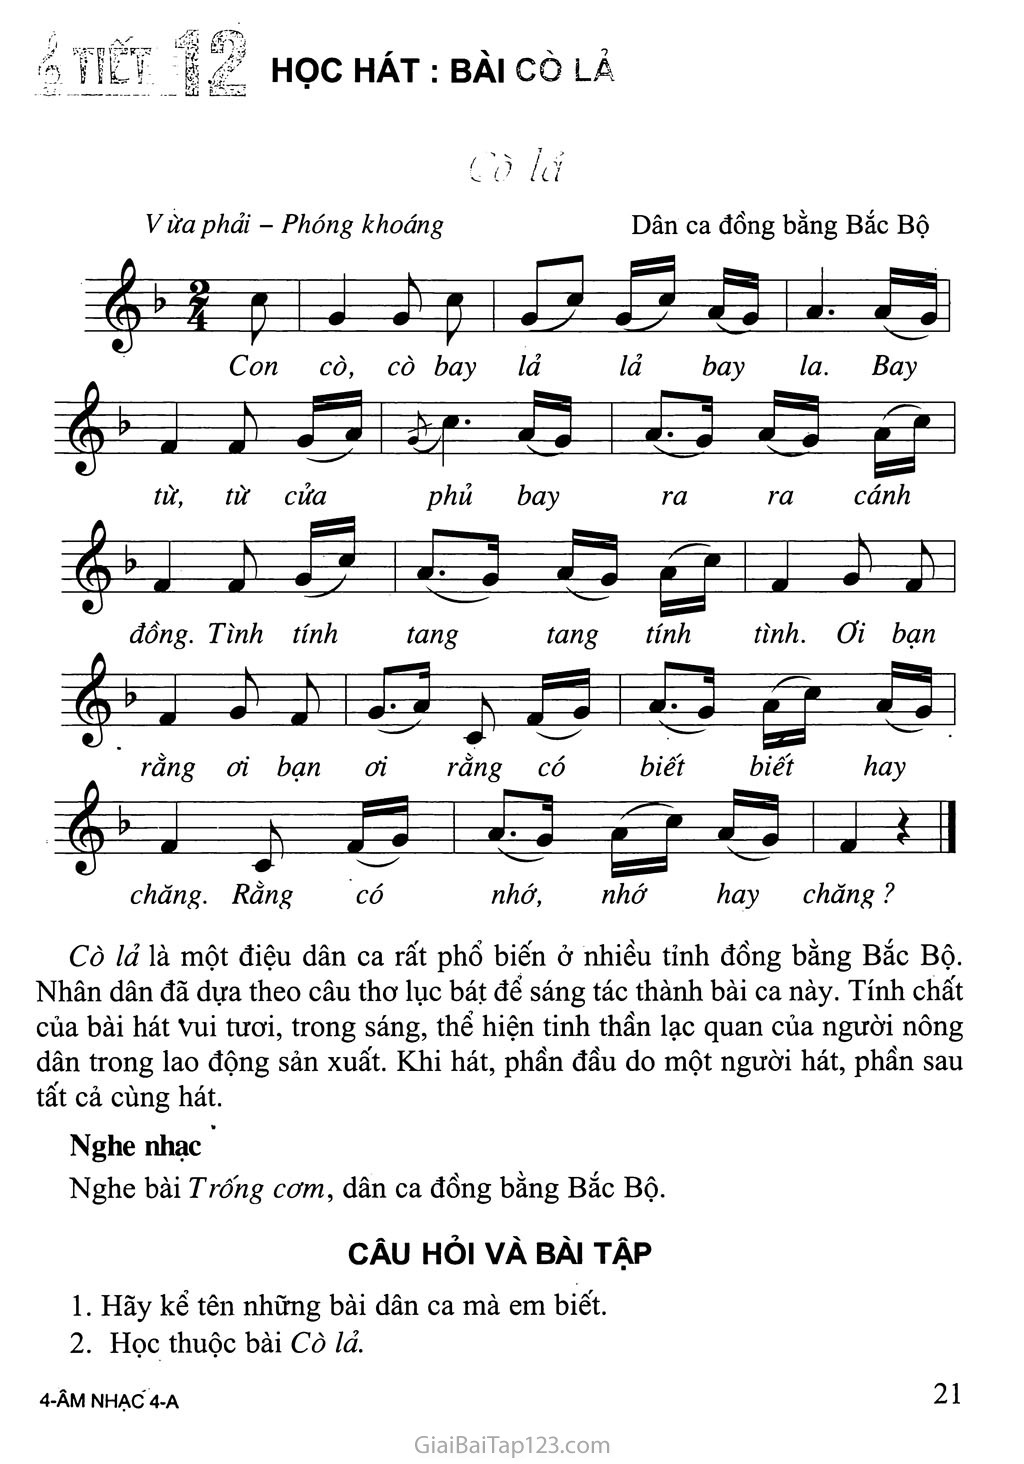 Tiết 12. Học hát: Bài Cò lả trang 1